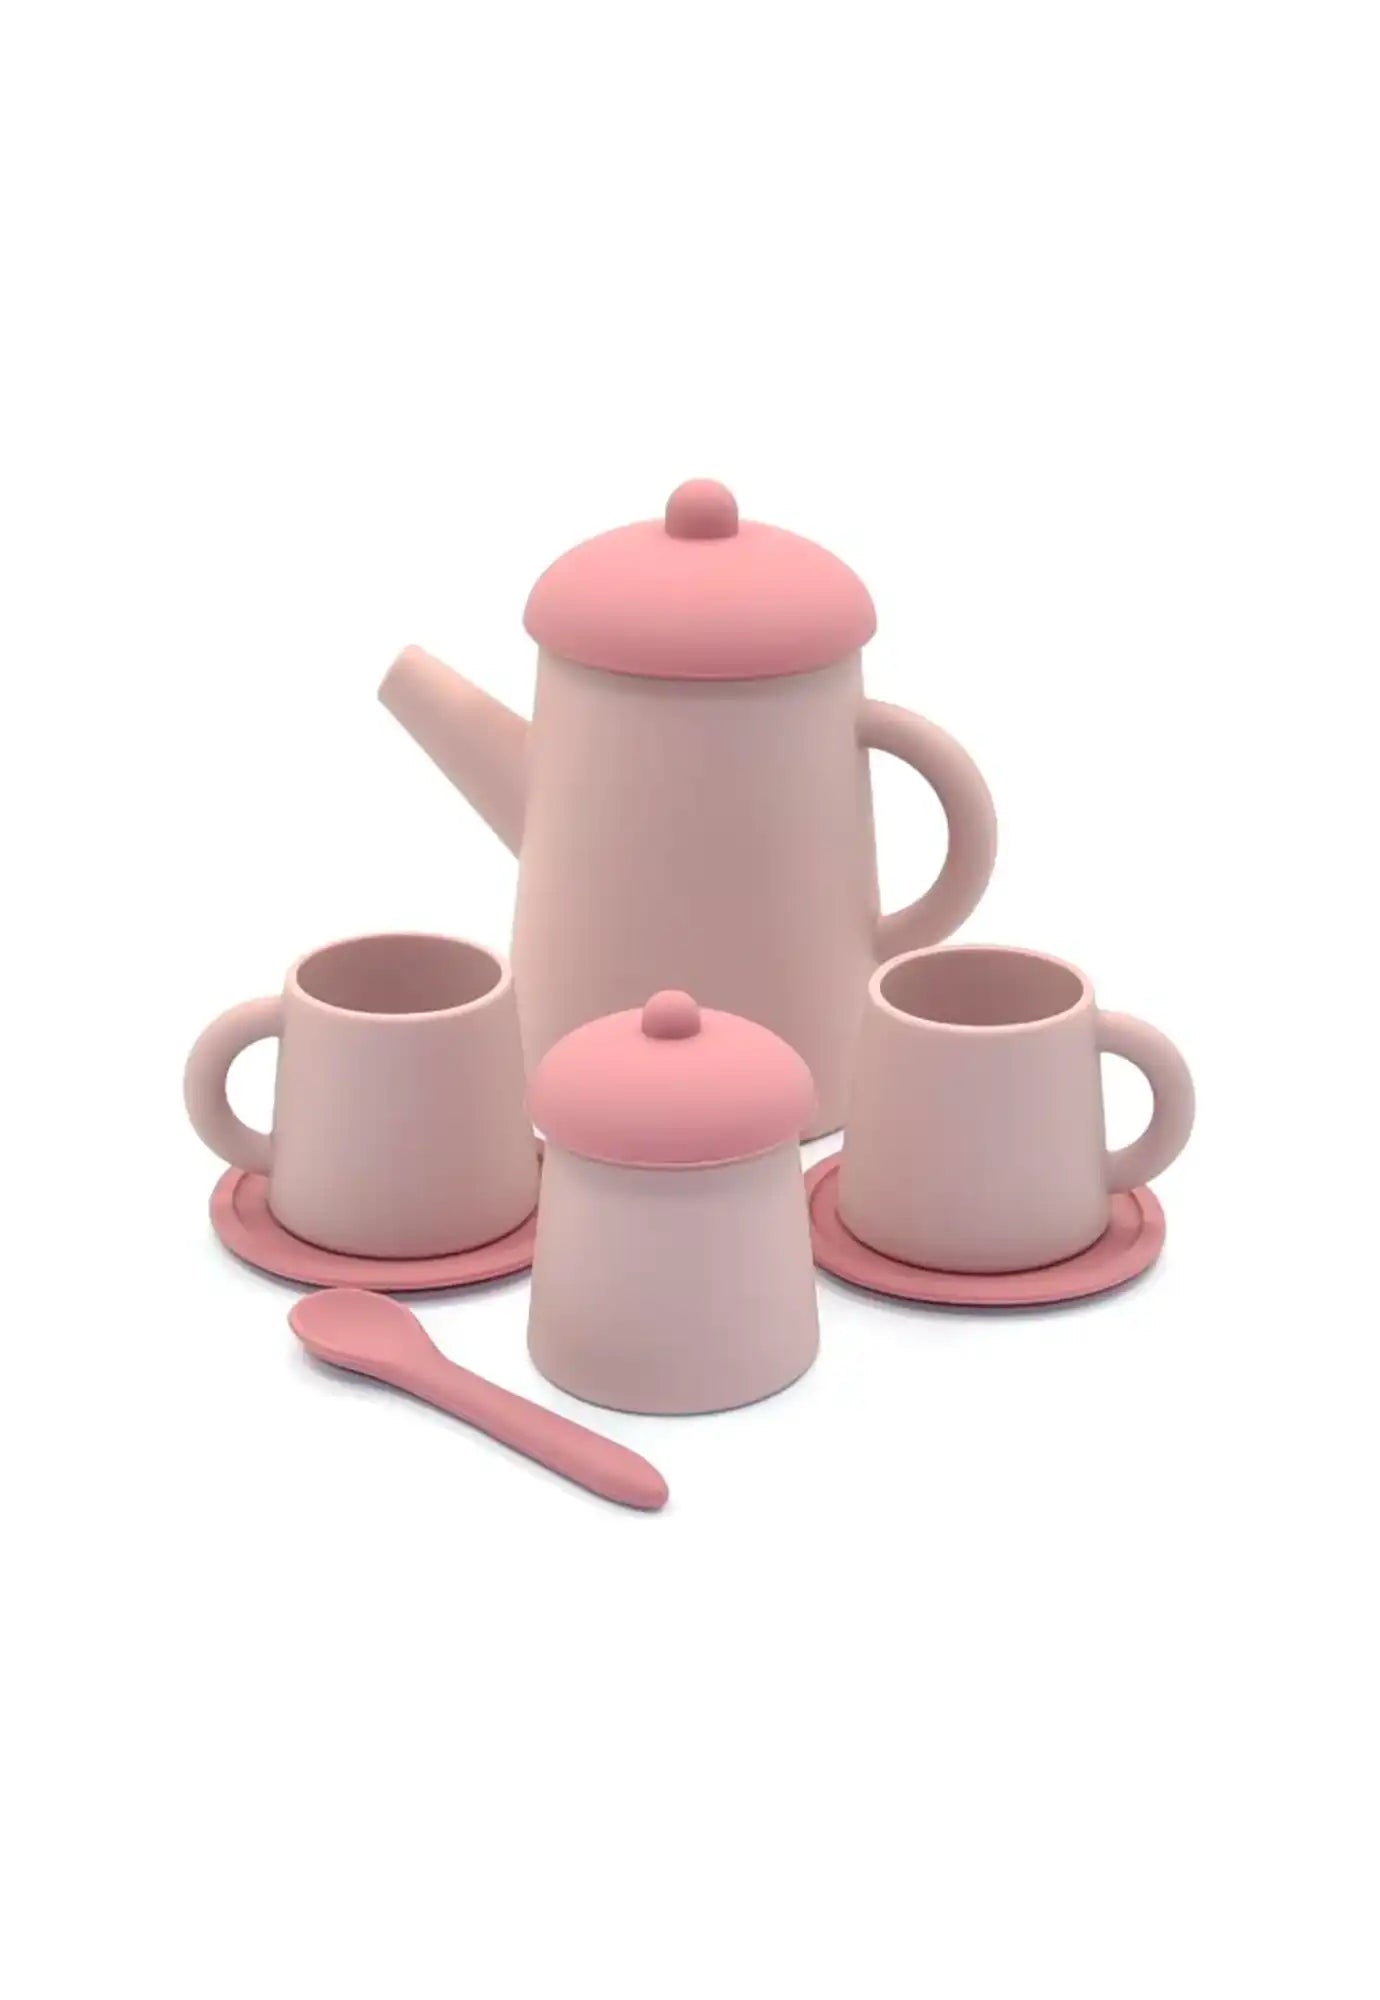 littledrop - tea time set - pink